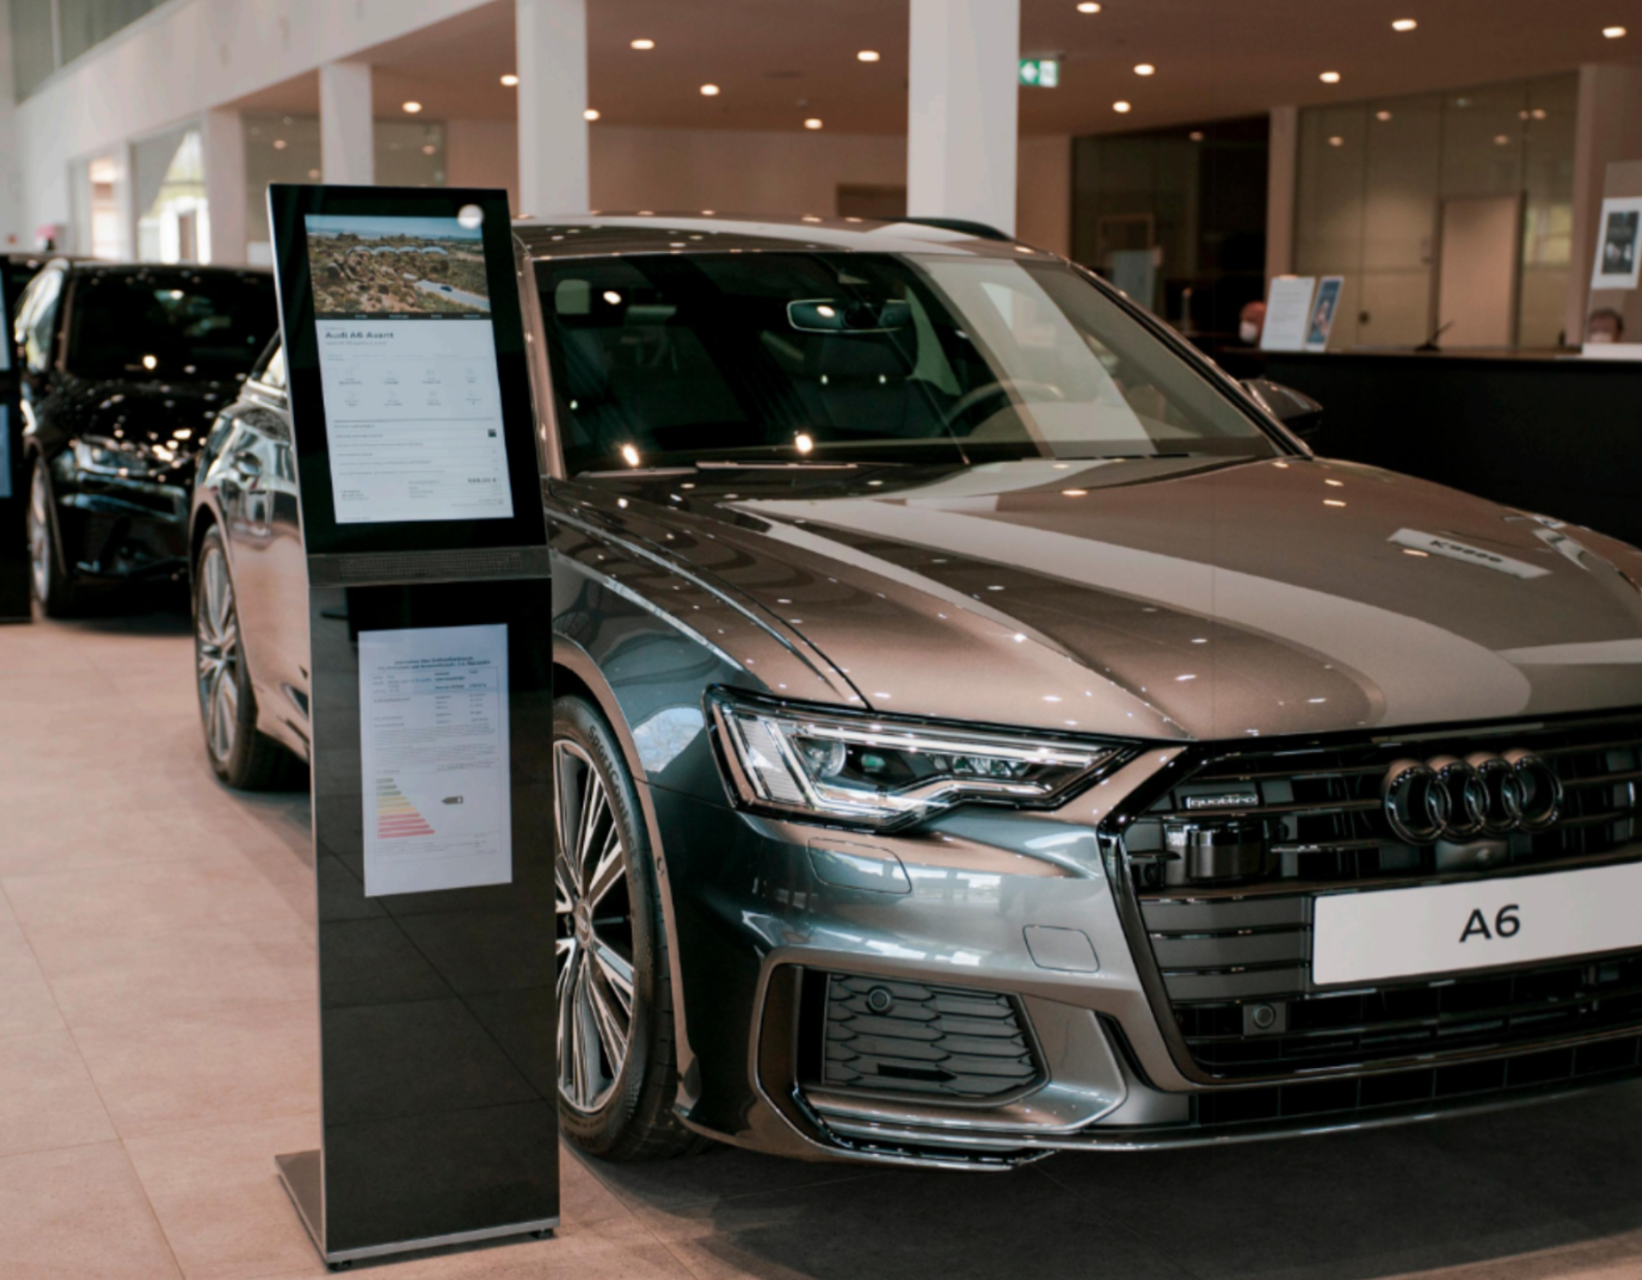 AVP portal at an Audi showroom